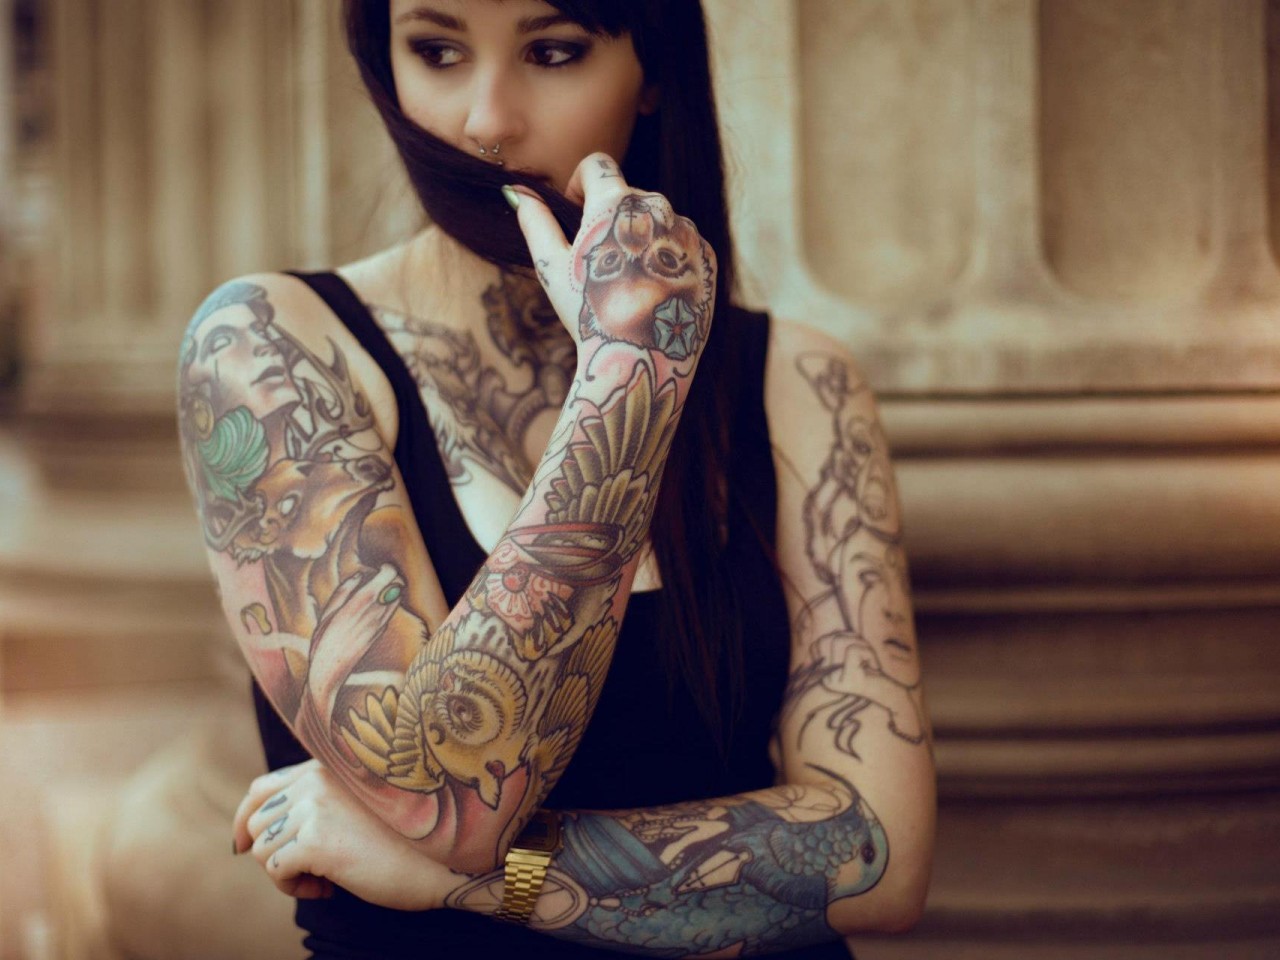 46+] Tattoo Models Wallpapers - WallpaperSafari